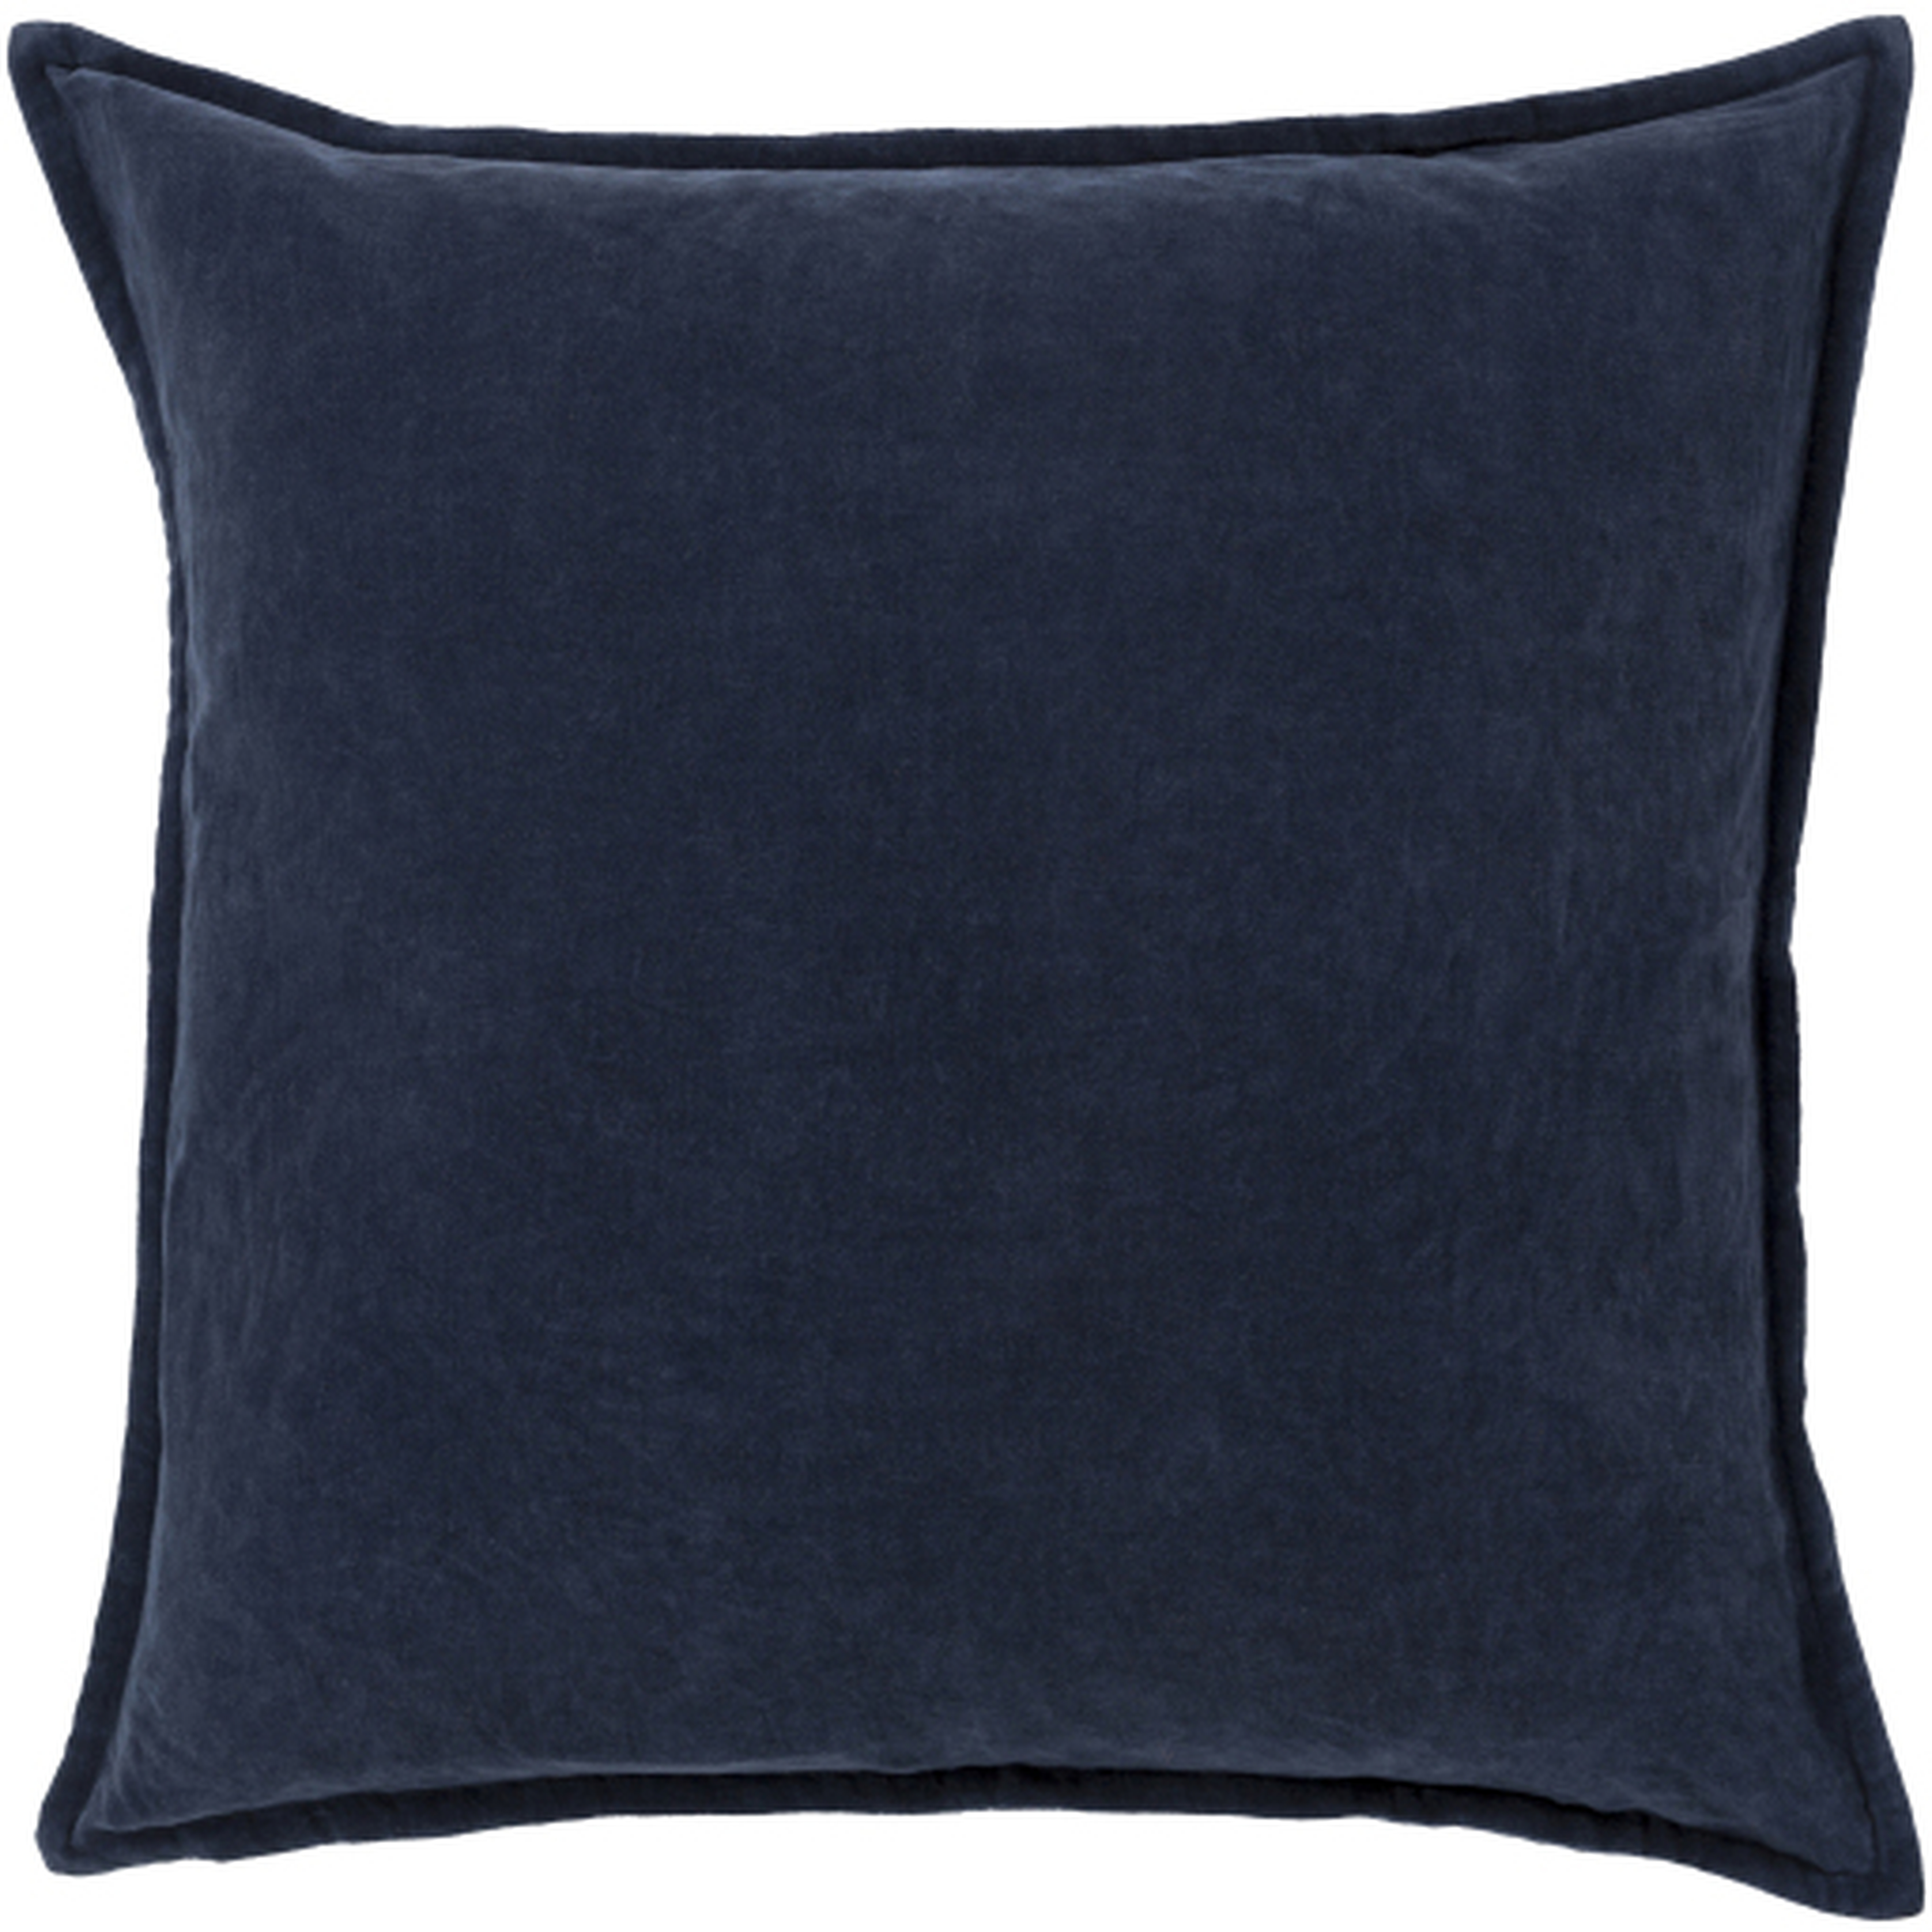 Cotton Velvet Pillow, 20" x 20", Navy - Neva Home